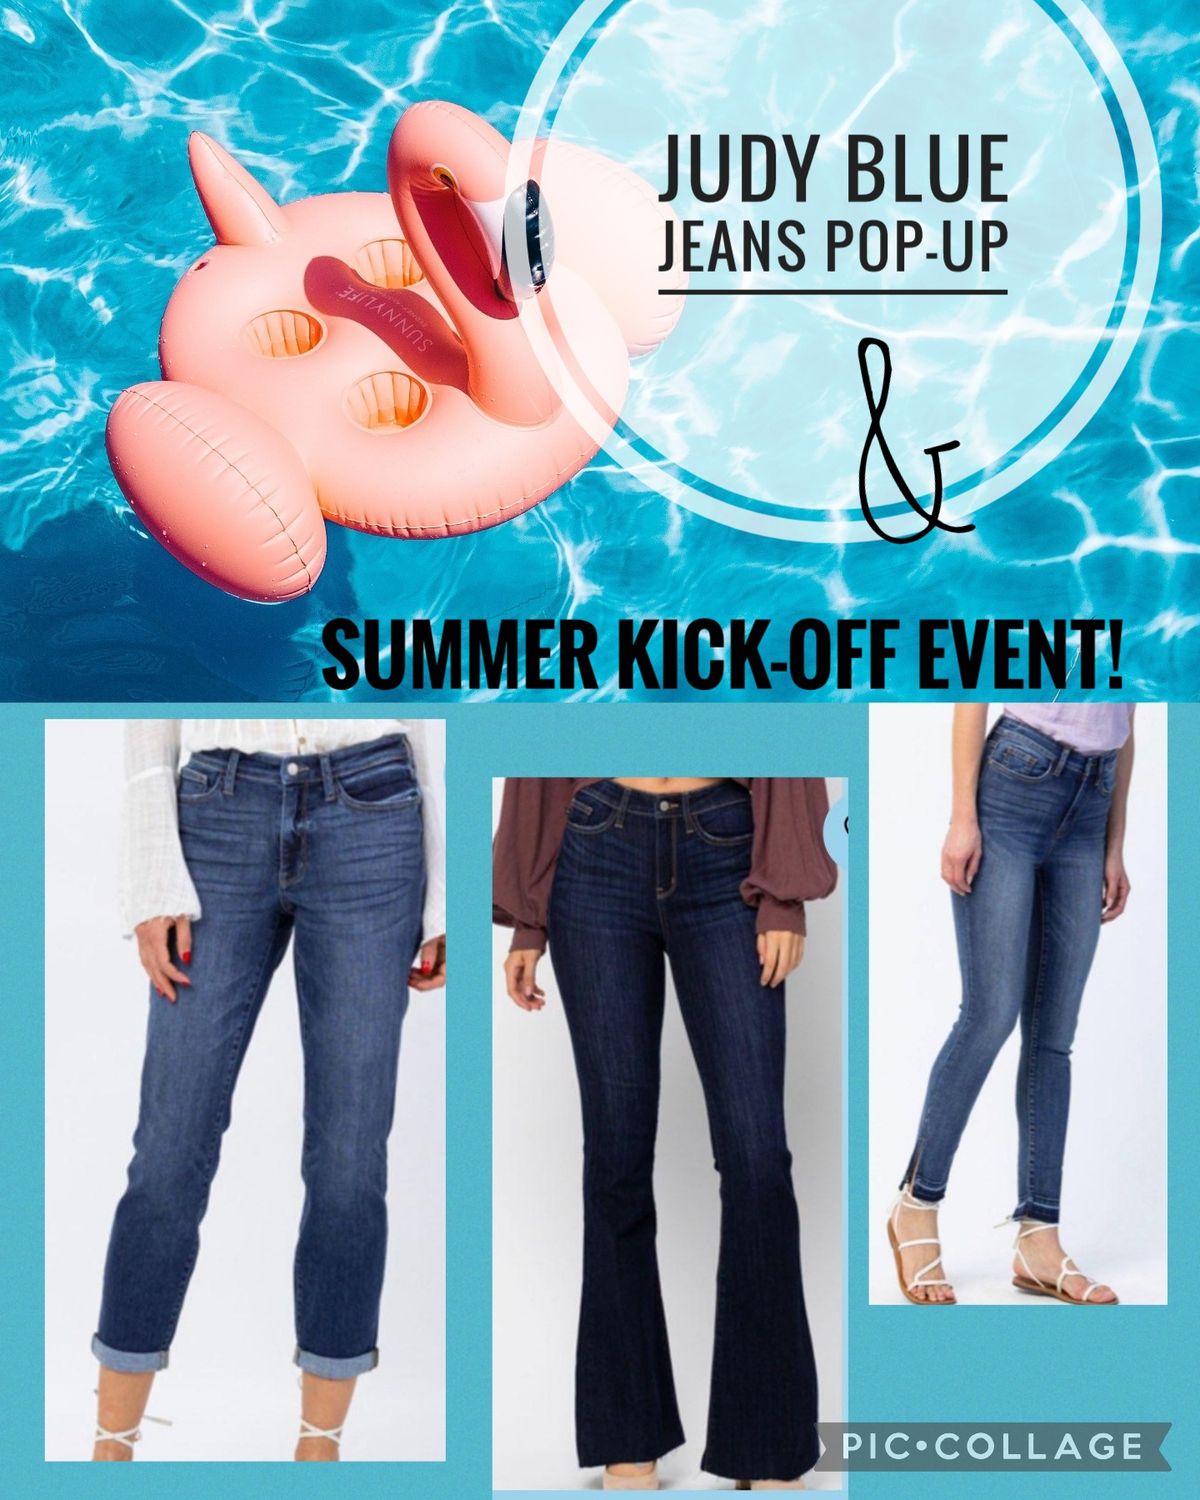 Judy Blue jeans Pop-Up & Summer Kick-Off Event!